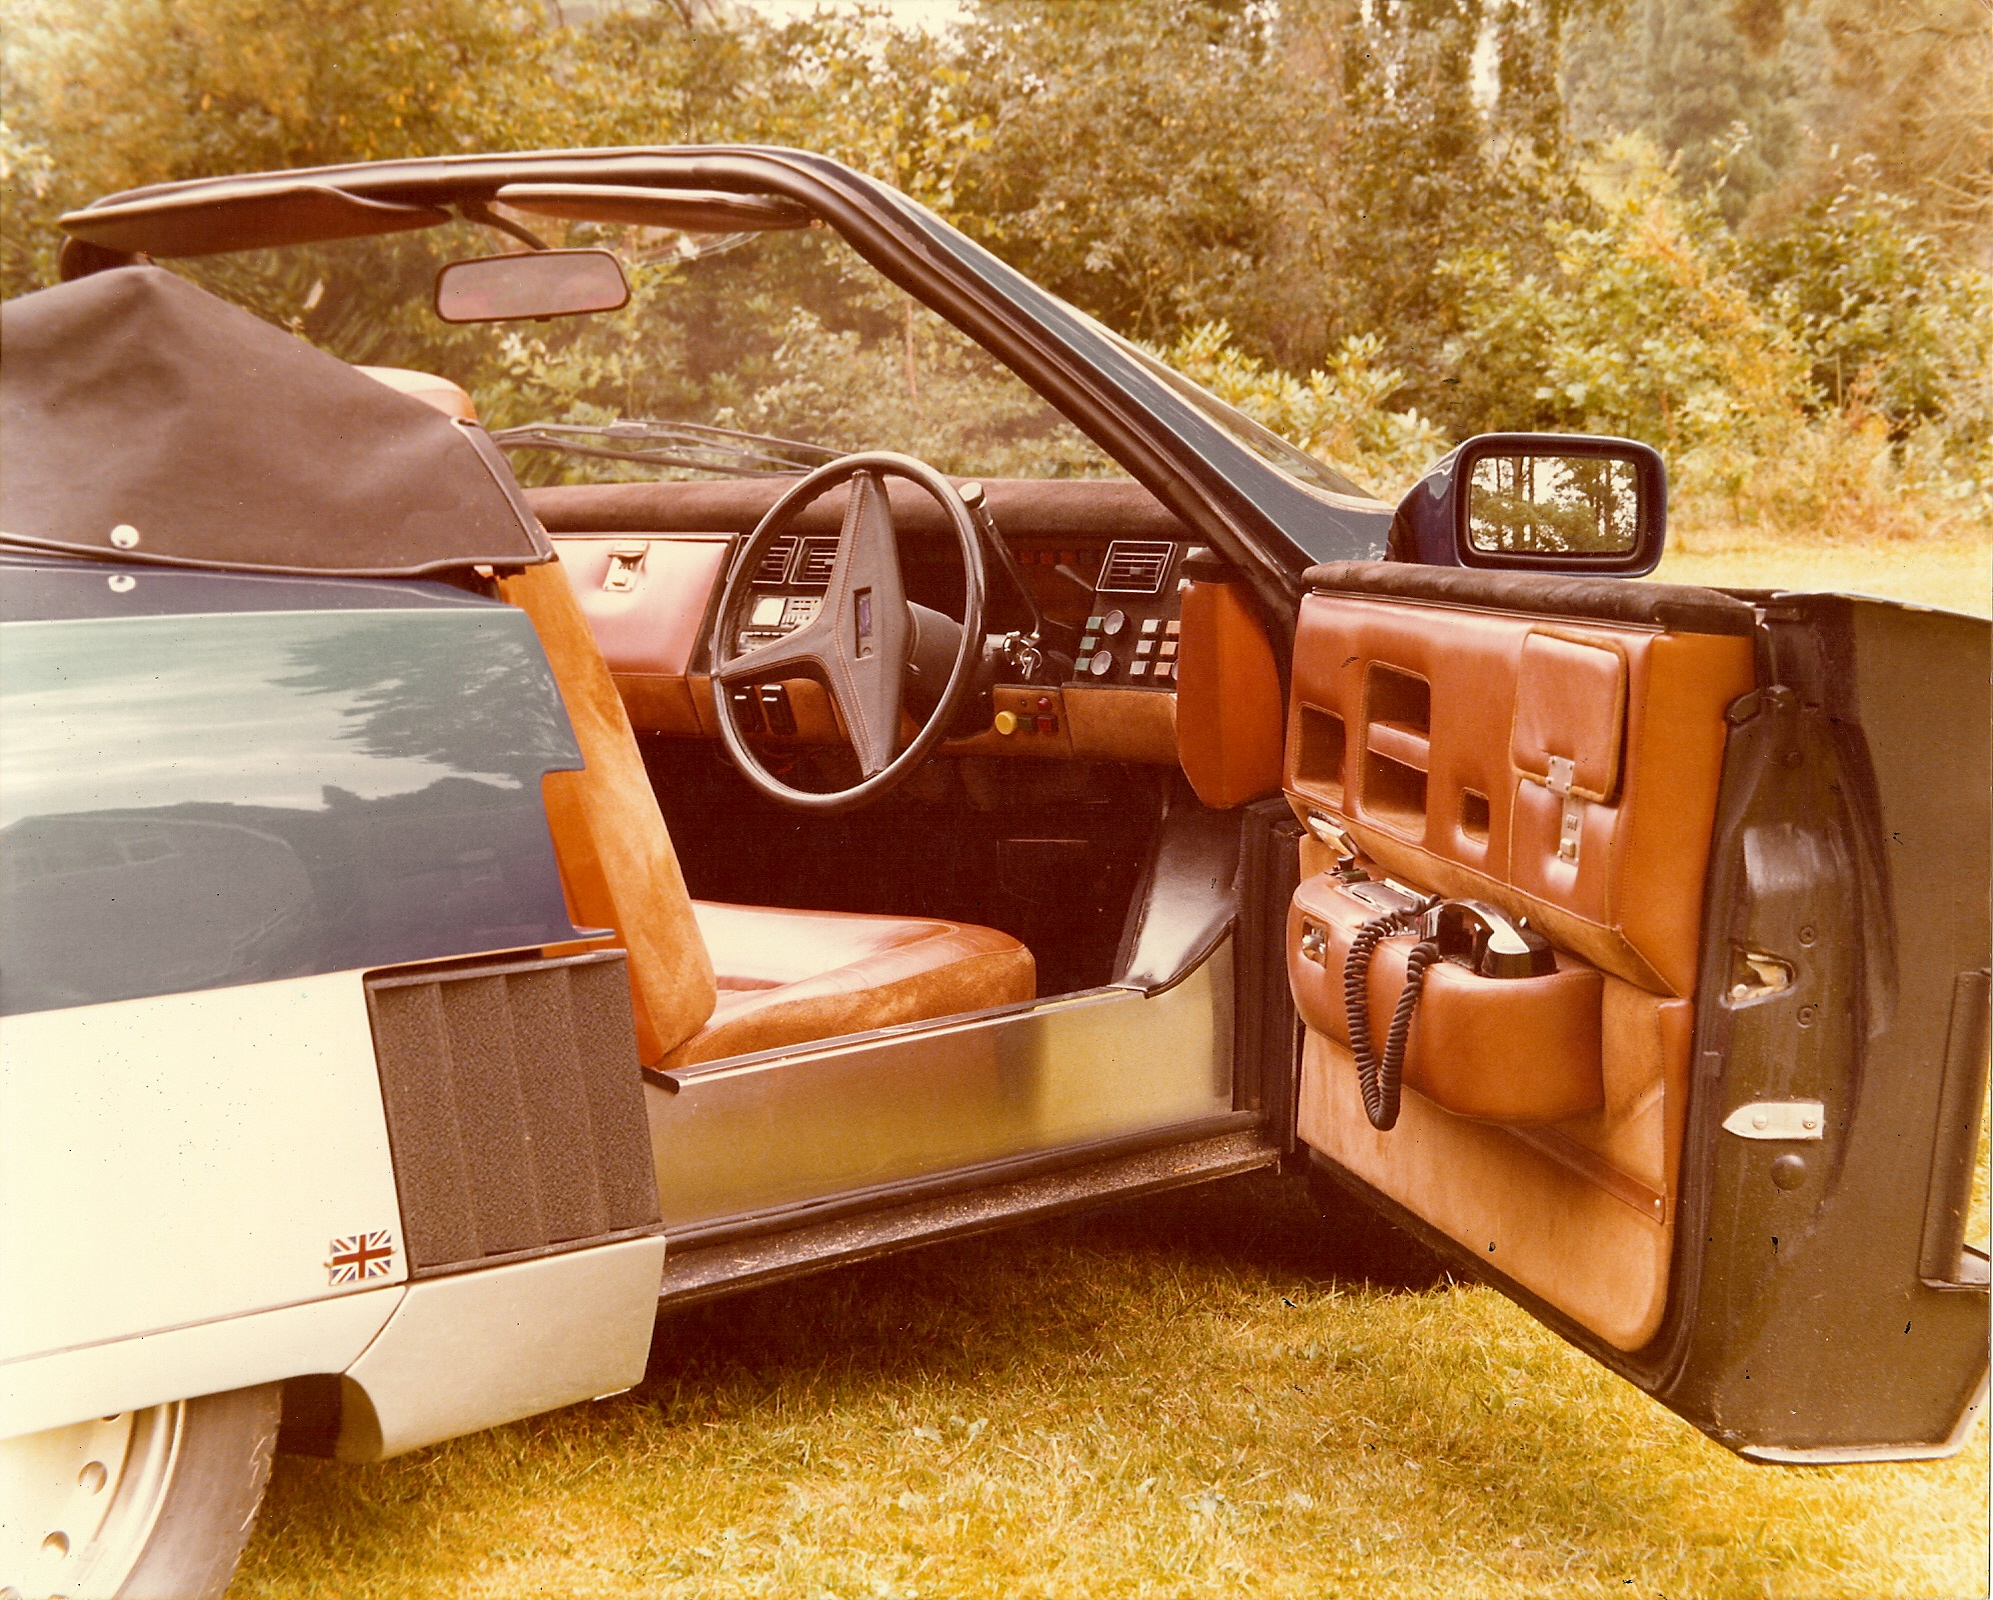 Et interiørbilde av bil #1, sannsynligvis tatt i 1980. Legg merke til telefonen i førerdøren. Foto: Terry Borton